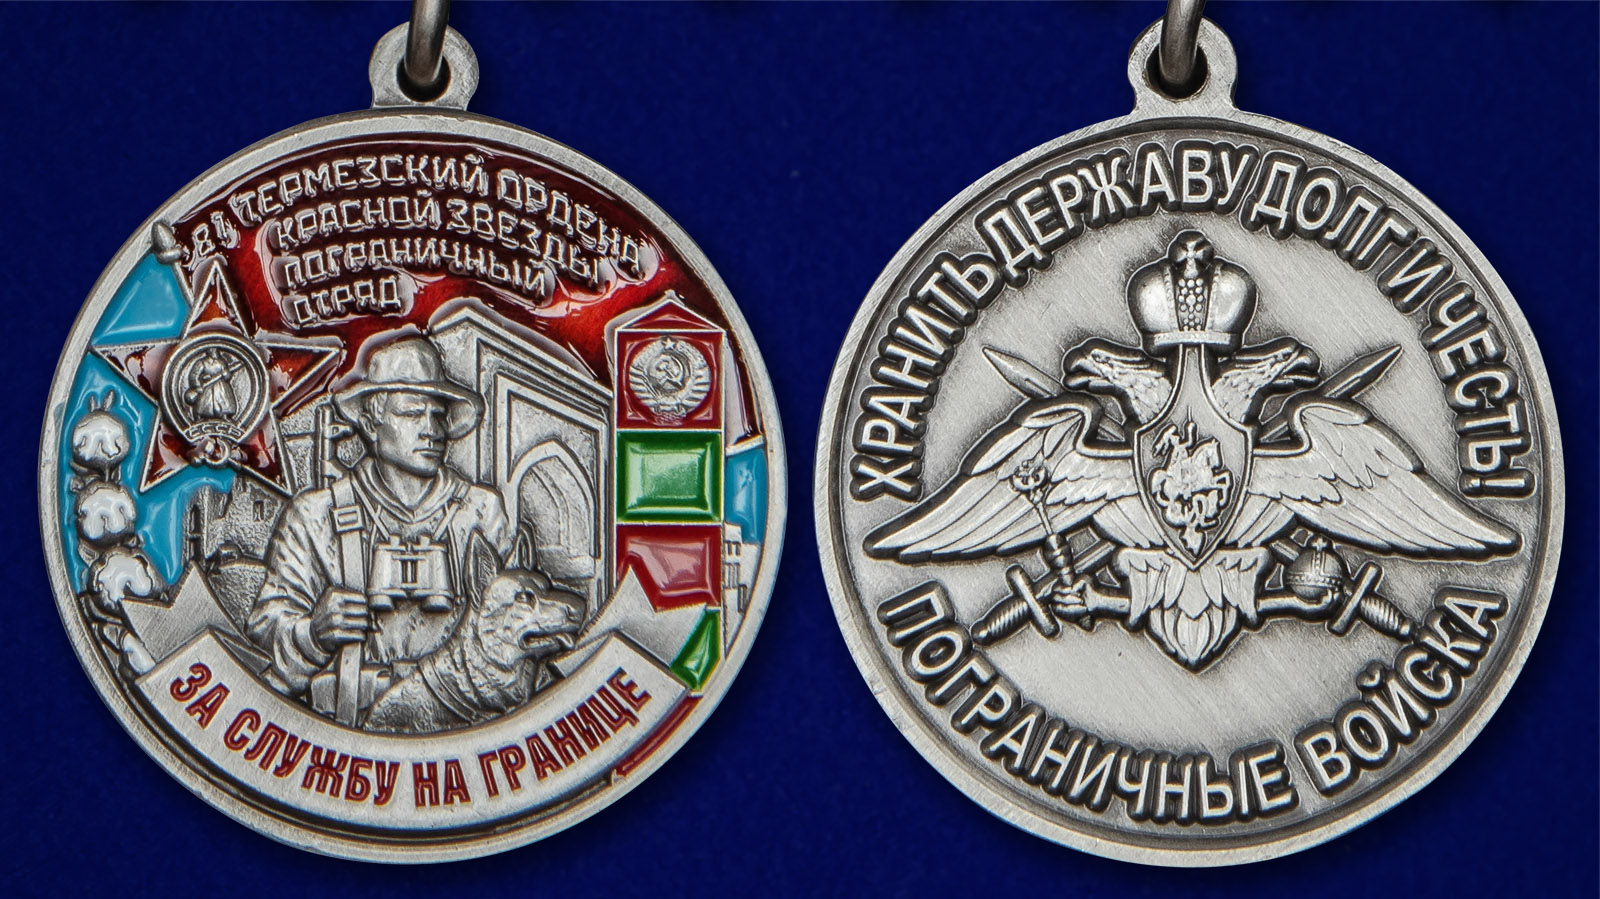 Медаль "81 Термезский ордена Красной Звезды Пограничный отряд" - аверс и реверс